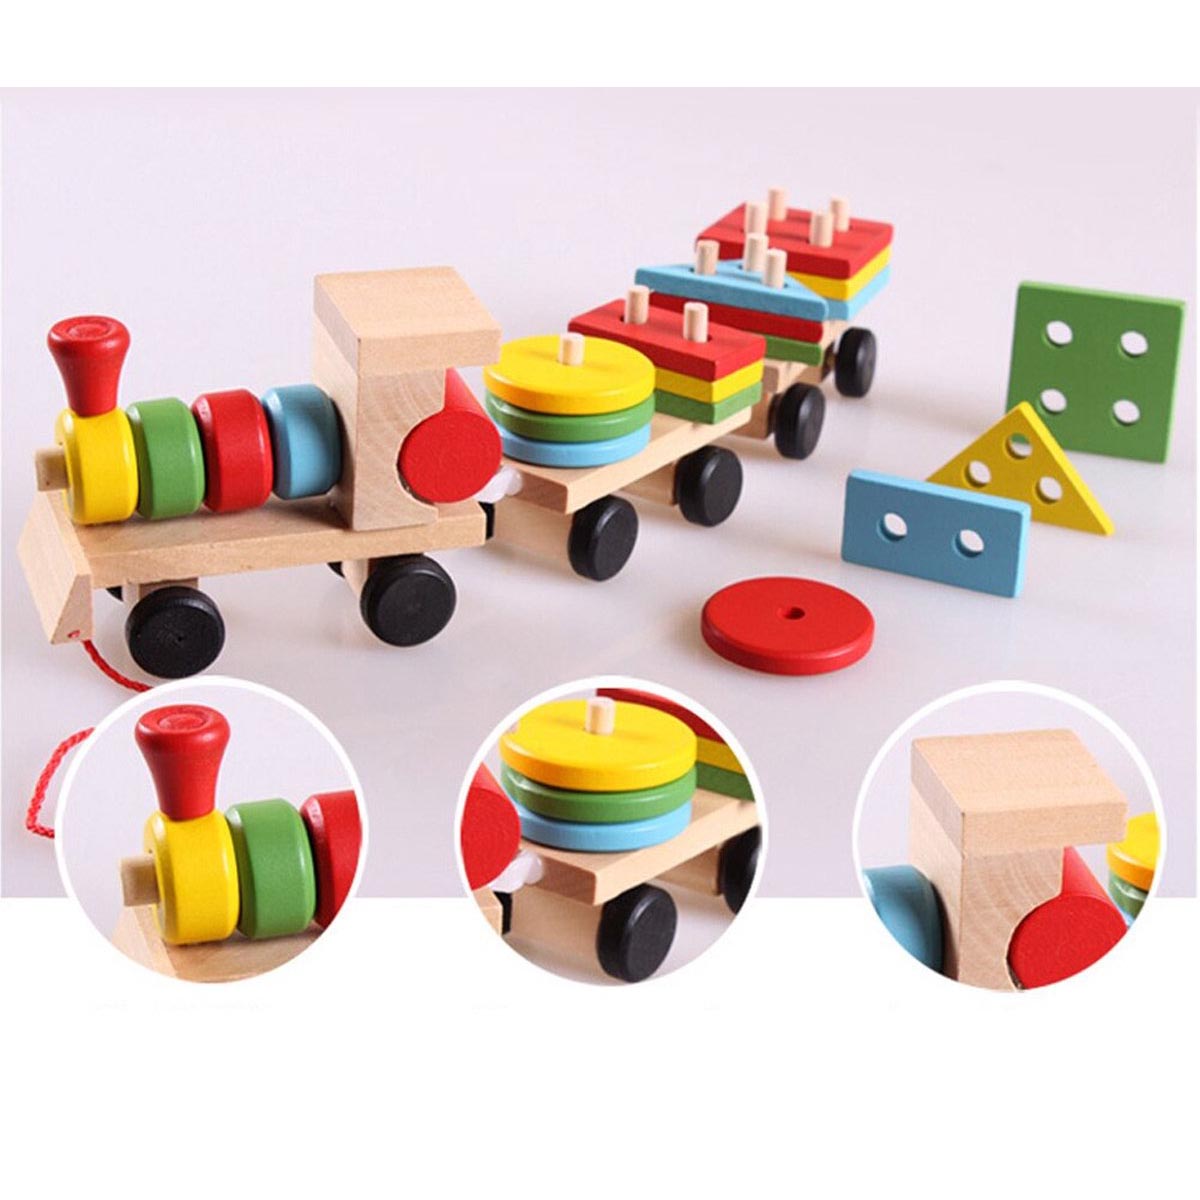 Ariko Train en bois XL avec blocs et formes - Train à blocs - Train jouet - Éducation avec formes et couleurs -